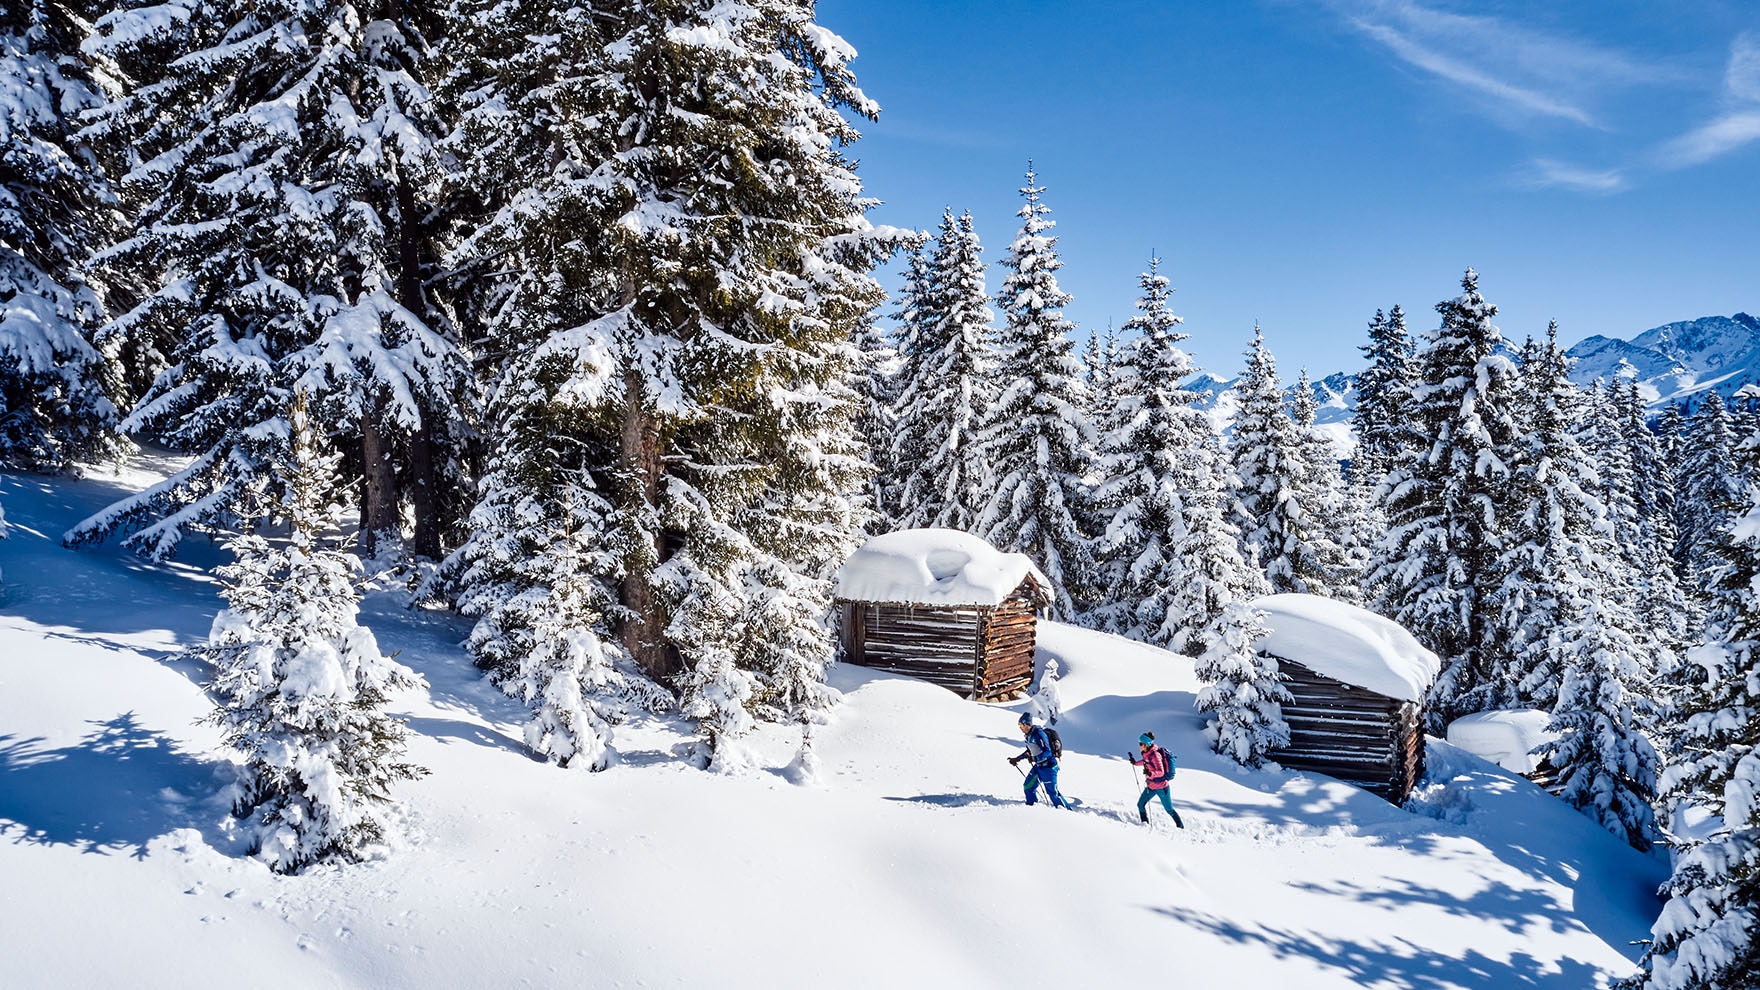 Ruhesuchende genießen die märchenhafte Winterlandschaft beim Schneeschuhwandern.